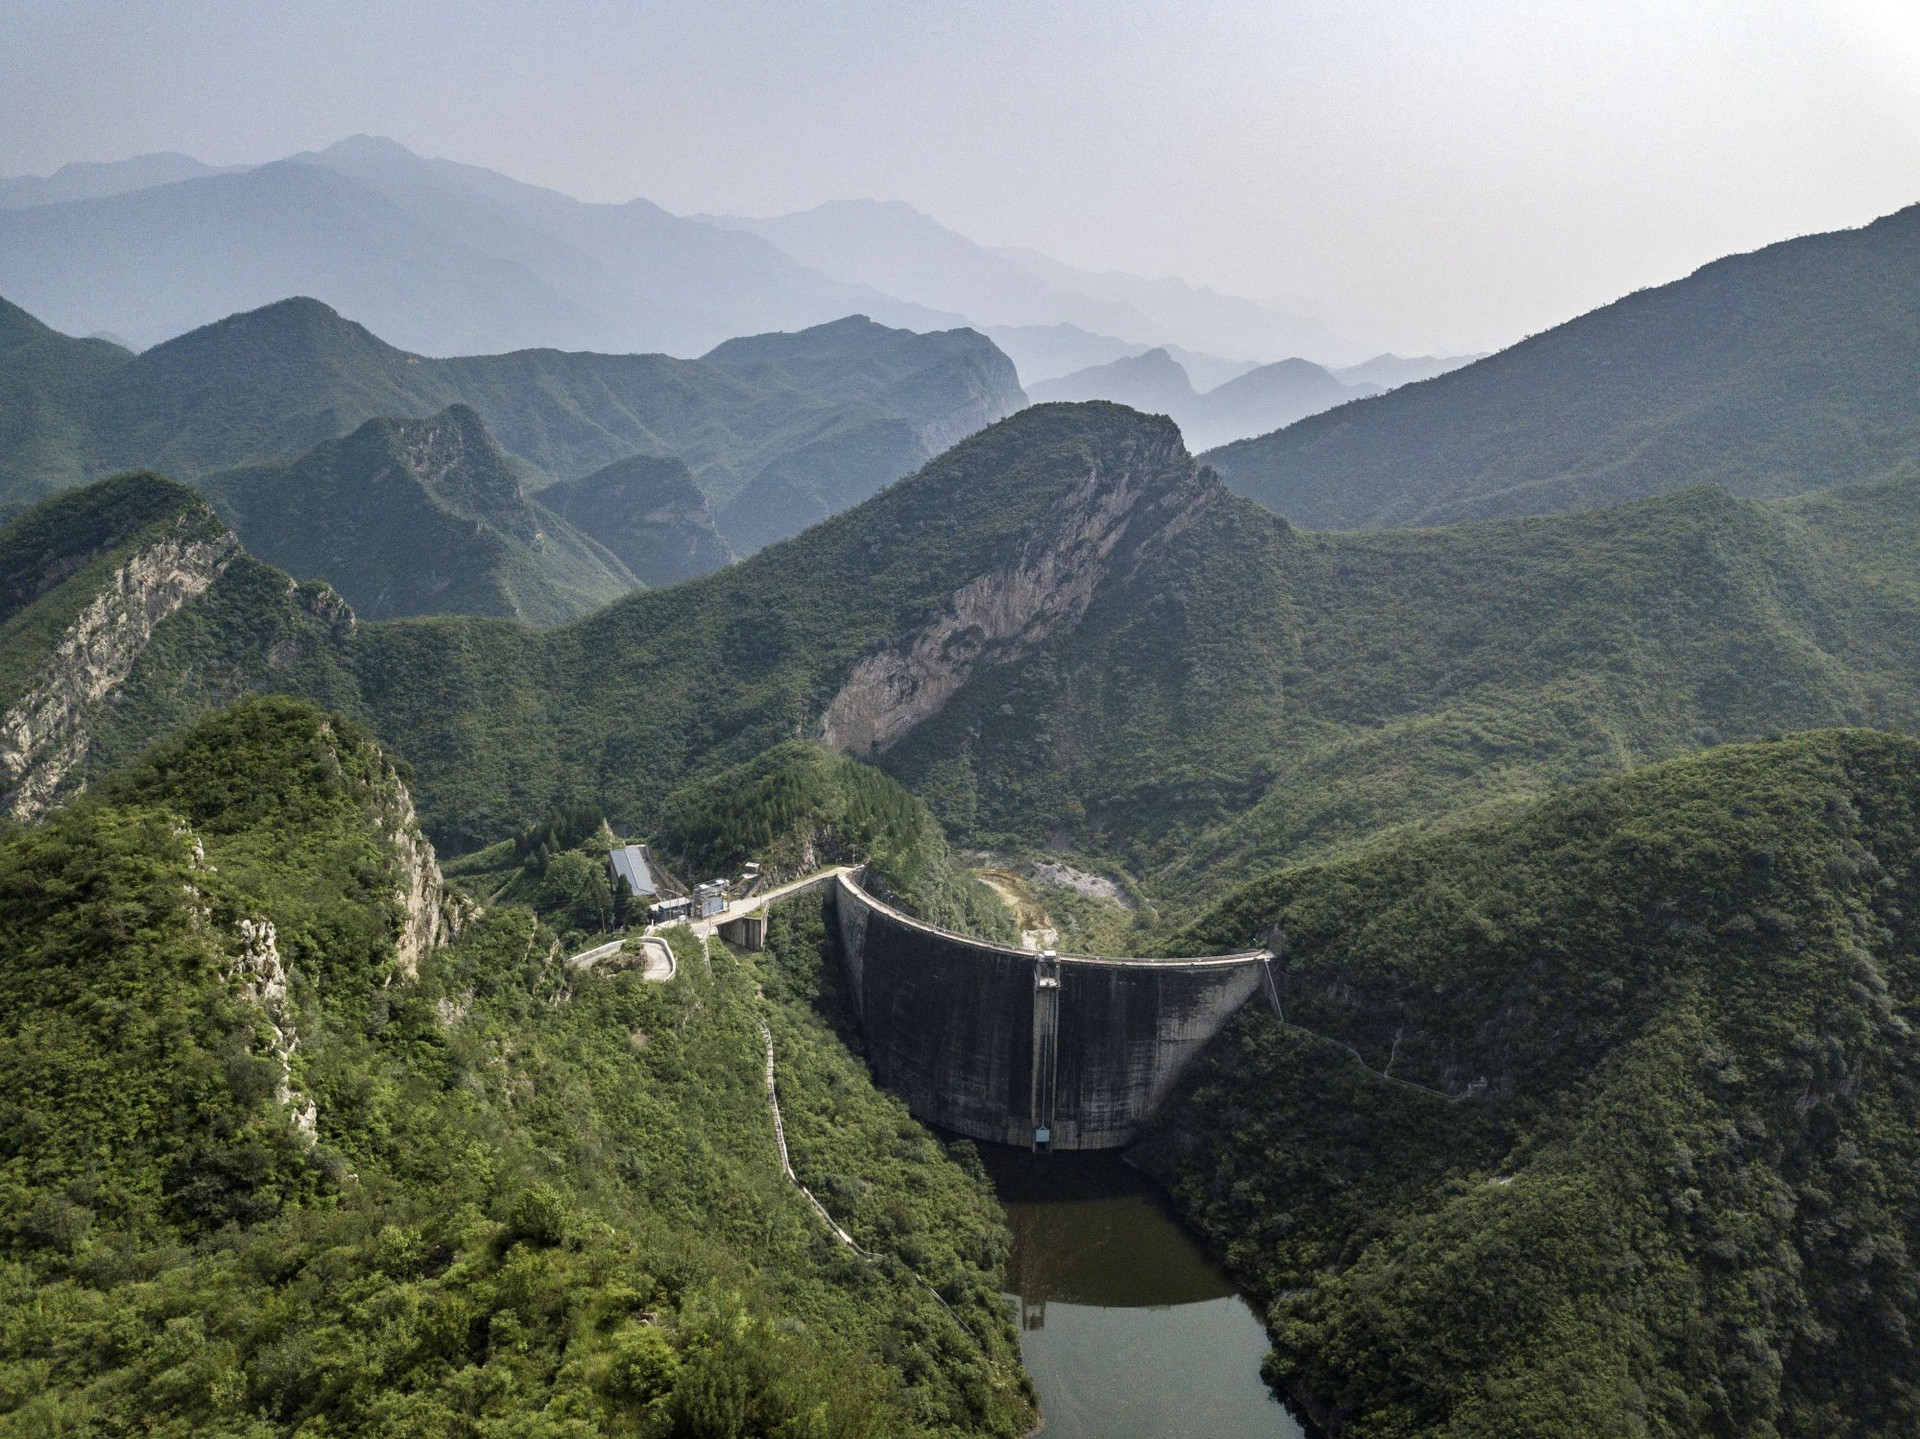 Trung Quốc “mệt nhoài” vì xây đập thuỷ điện: Sở hữu 98.000 con đập nhưng từng muốn phá bỏ gần nửa, nhiều nhà máy im lìm khi các dòng sông trơ đáy - Ảnh 3.